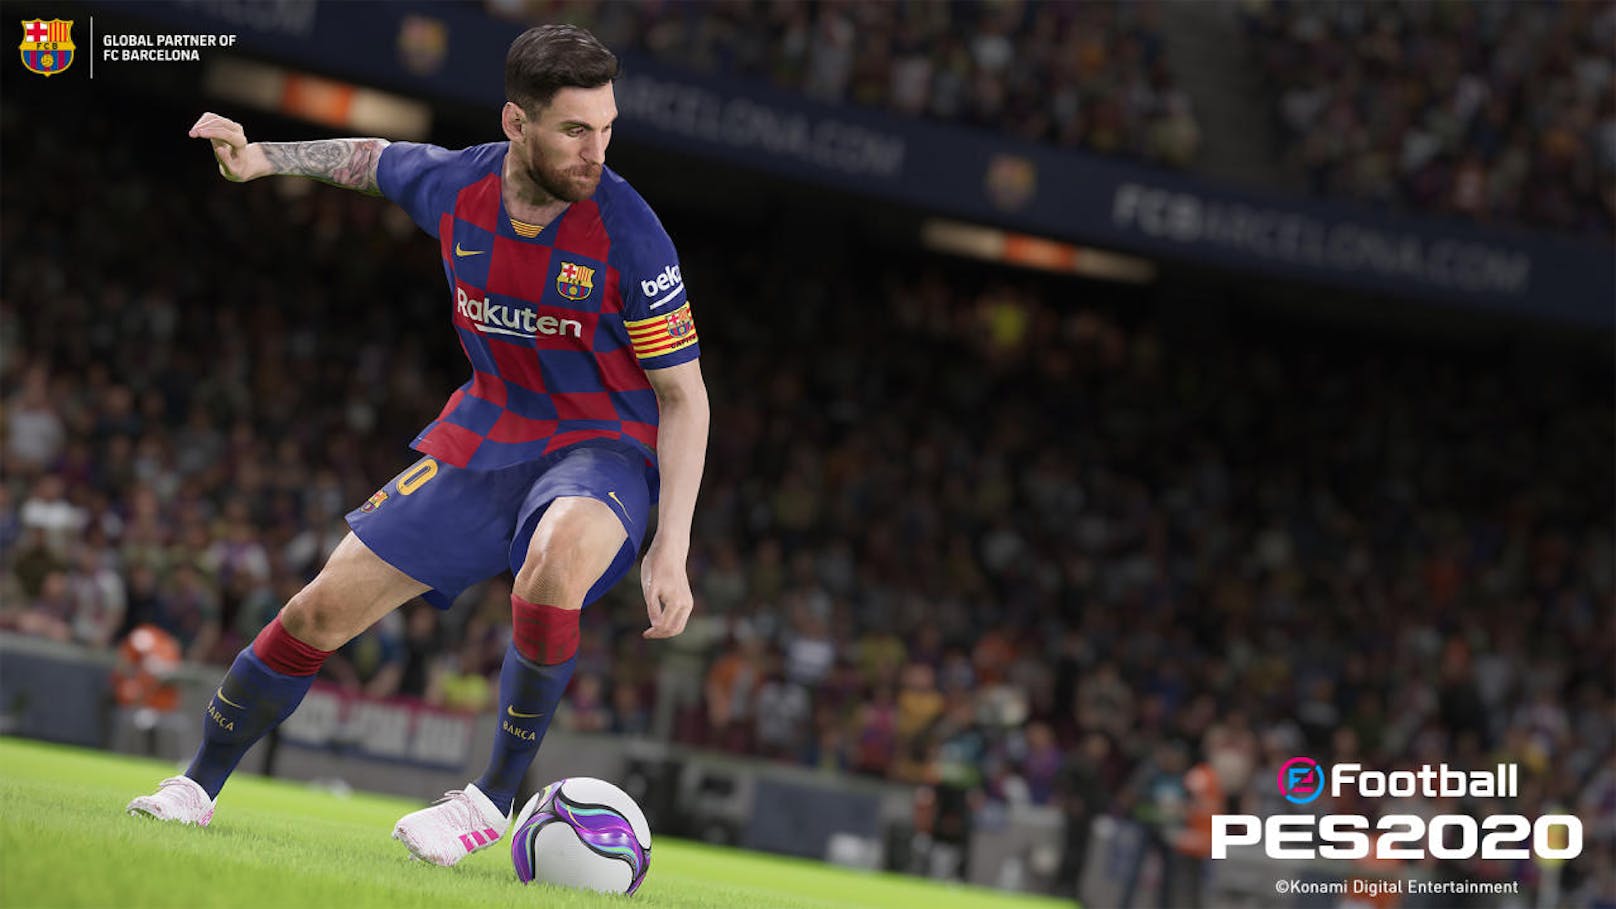 Im Rahmen der E3 2019 kündigte Konami die Fußballsimulation eFootball PES 2020 an, den nächsten Ableger der beliebten PES-Reihe. Fußball-Star Lionel Messi vom FC Barcelona ist das Aushängeschild von PES 2020. Das Spiel kann in Kürze für PlayStation 4, Xbox One und PC (via Steam) vorbestellt werden. PES 2020 leitet ein neues Jahrzehnt der realistischen Fußballsimulation ein und gibt das Versprechen ab, eFootball zu revolutionieren und den Sport einem breiten, globalen Publikum zu präsentieren. Die PES-Reihe setzt dabei ihr konsequentes Bestreben nach Realismus fort und berücksichtigt bei der Umsetzung neuer Features stets das Feedback der Fans. <a href="https://www.youtube.com/watch?v=fK3_uf8FLHc&feature=youtu.be">Hier geht es zum Ankündigungs-Trailer.</a>